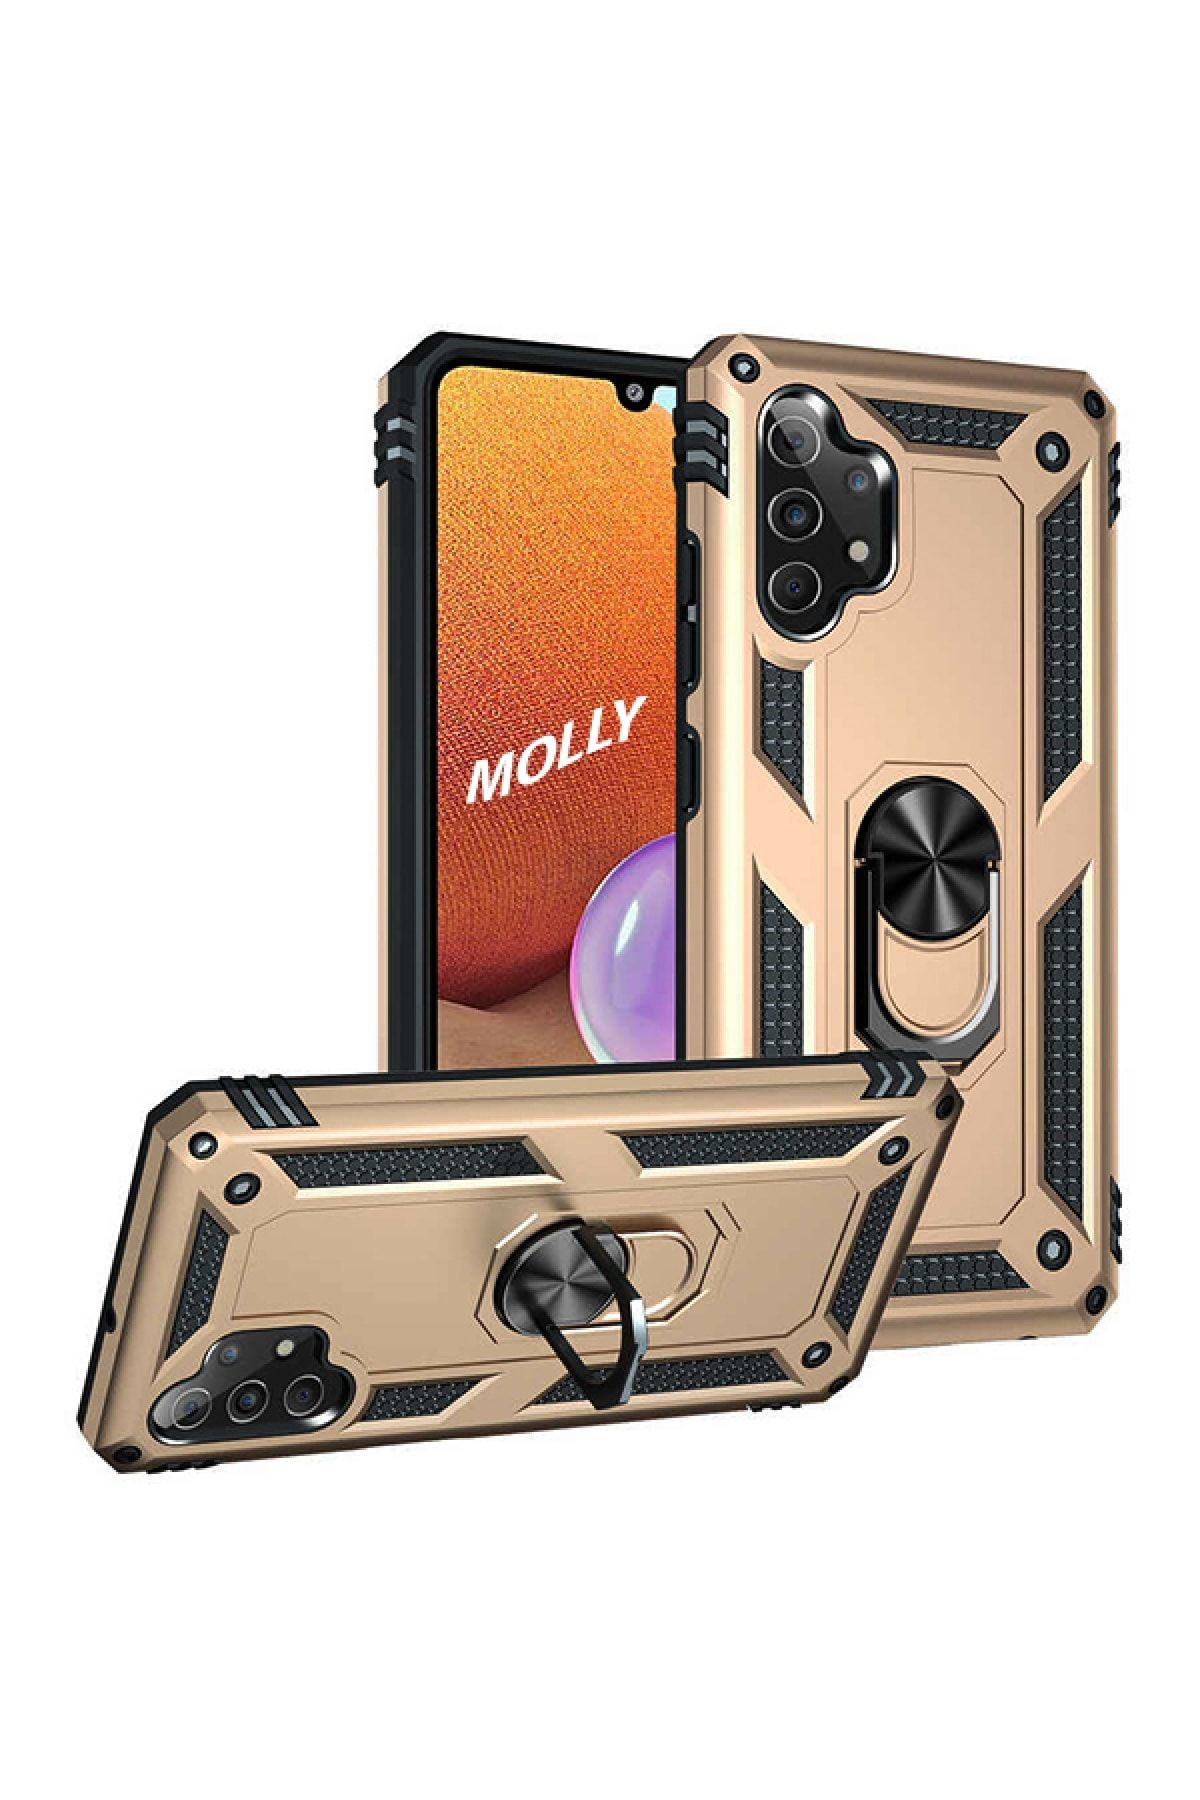 Molly Galaxy A32 4g Uyumlu Gold Megatron Yüzüklü Silikon Pc Kılıf